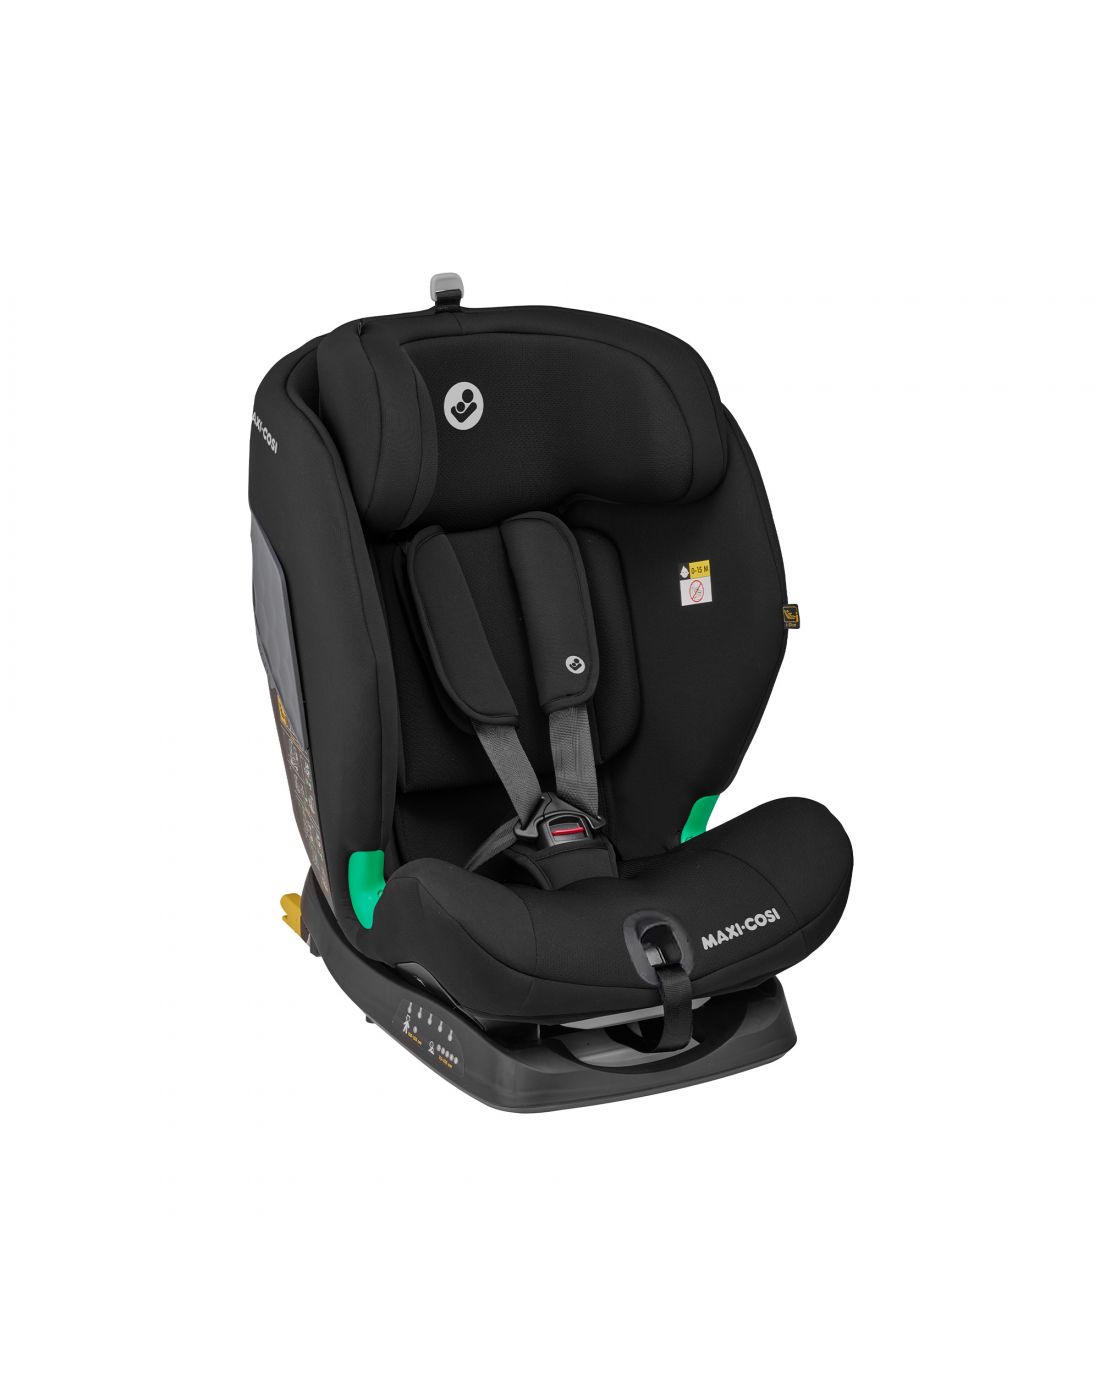 Παιδικό Κάθισμα Αυτοκινήτου Maxi Cosi i-Size Titan Basic Black